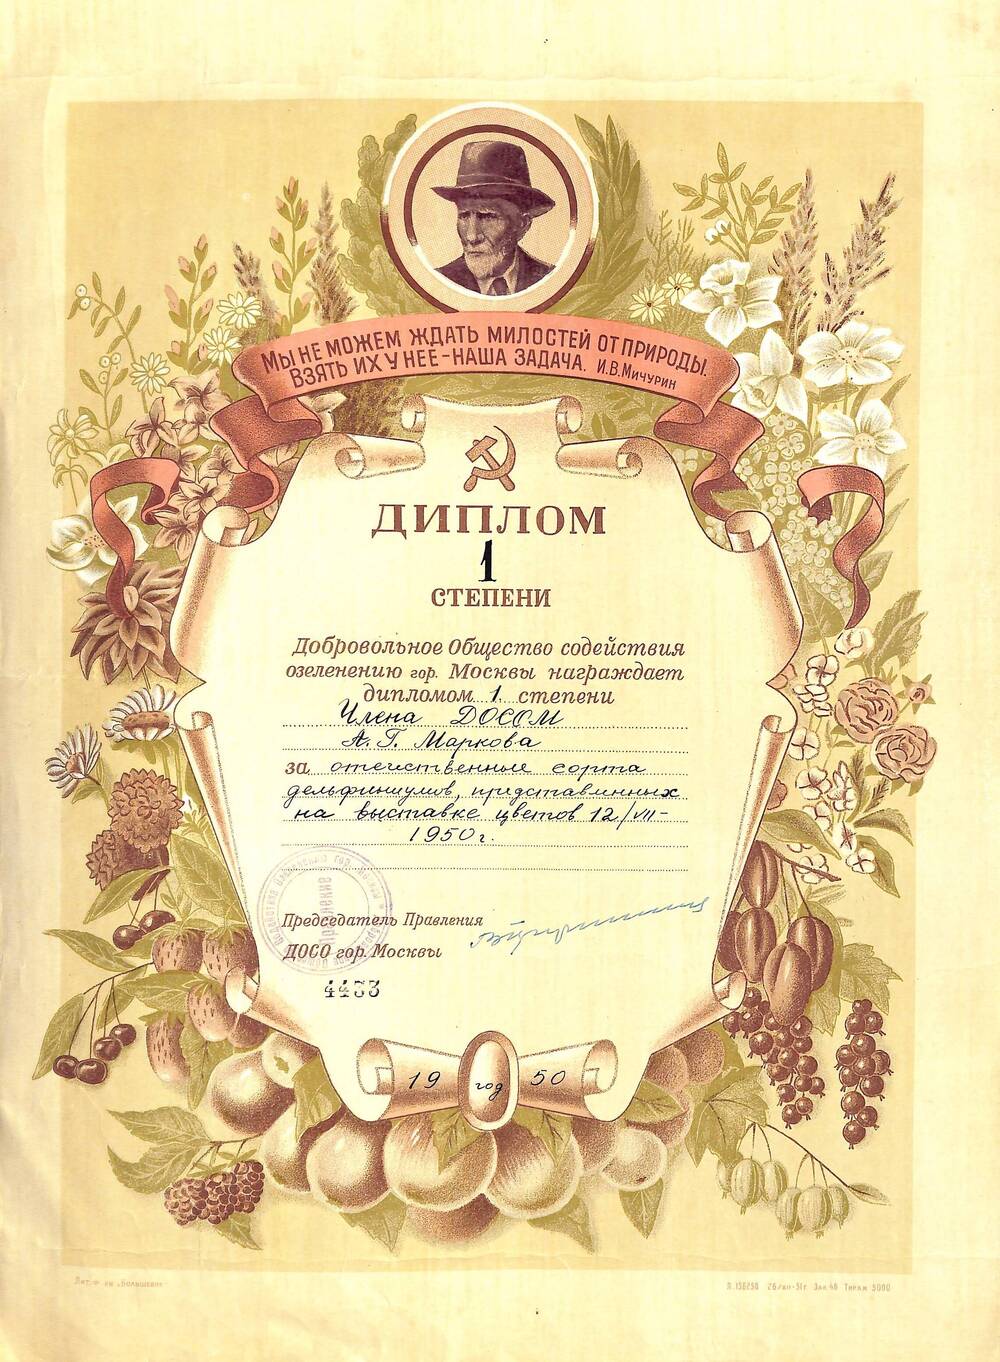 Диплом I степени №4433 Правления Добровольного Общества Содействия Озеленению г. Москвы Маркову А.Г. за отечественные сорта дельфиниумов, представленных на выставке цветов 12 июля 1950 г.
г. Москва. 1950 г.